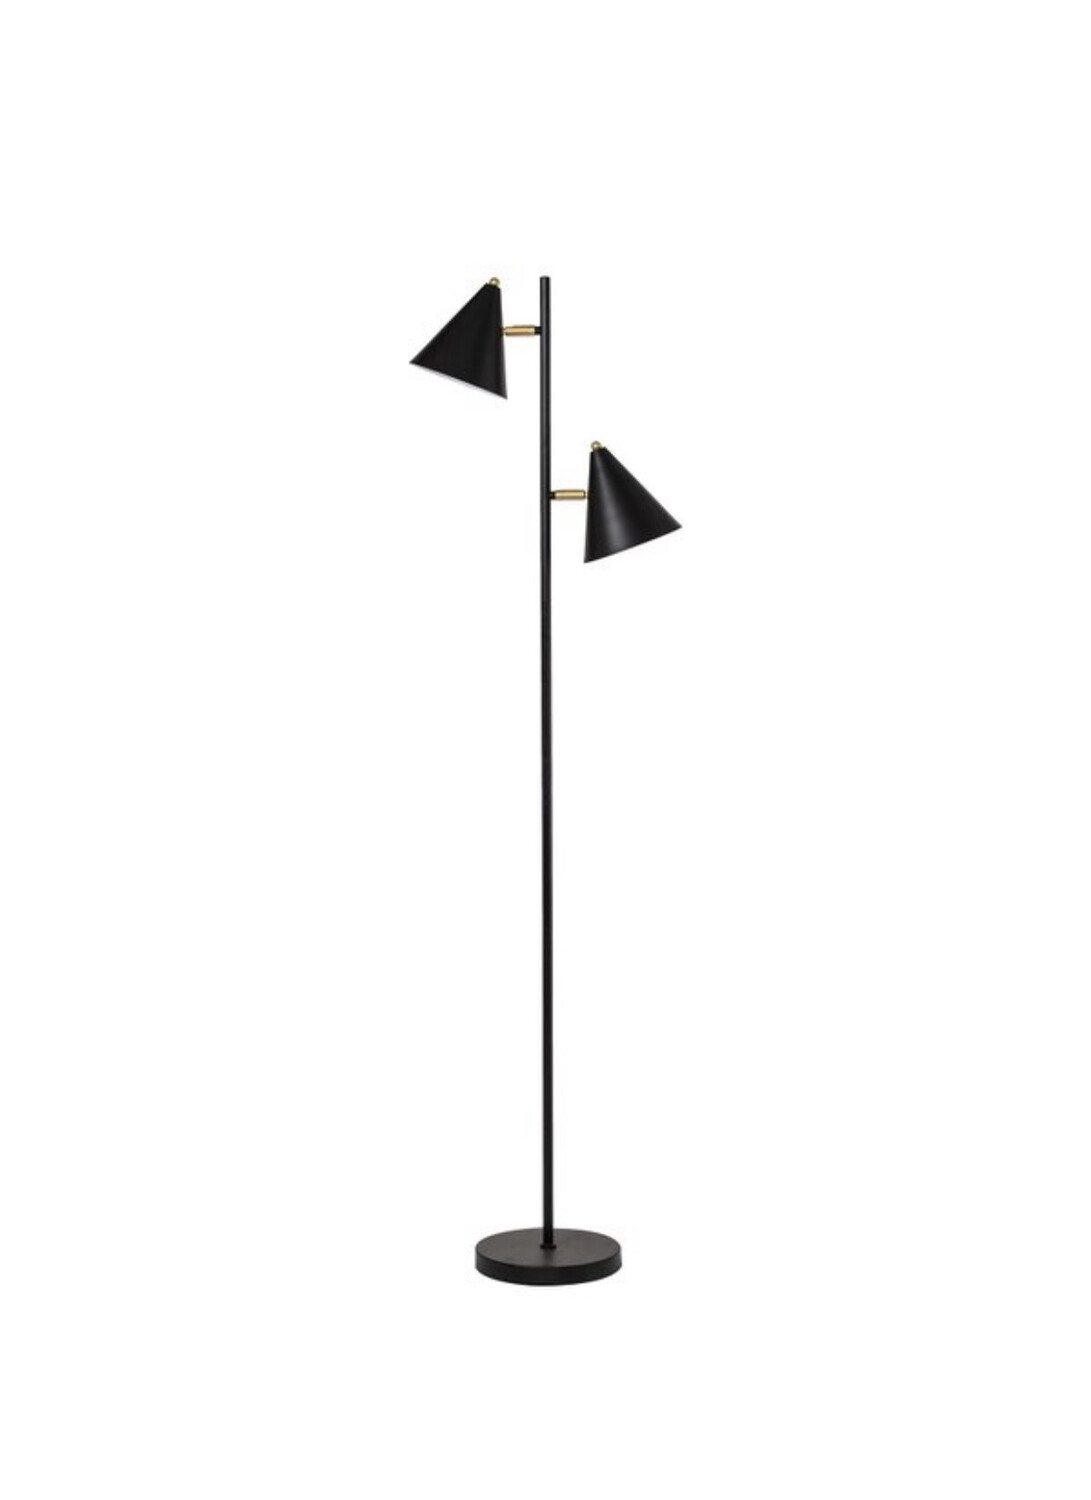 MODERN BLACK FLOOR LAMP